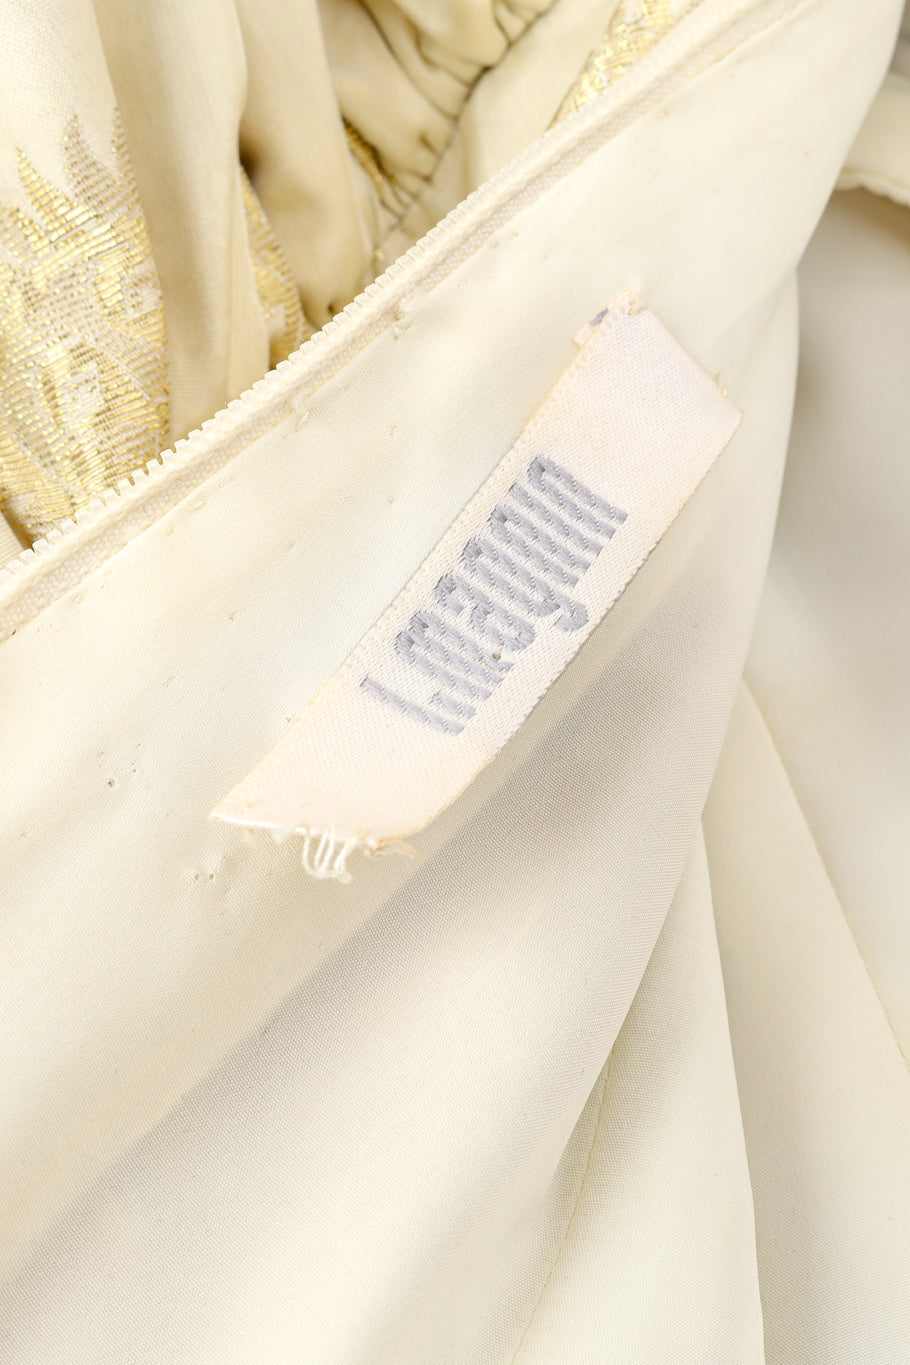 Vintage Bob Mackie Sunburst Strapless Gown I.magnin label @recessla